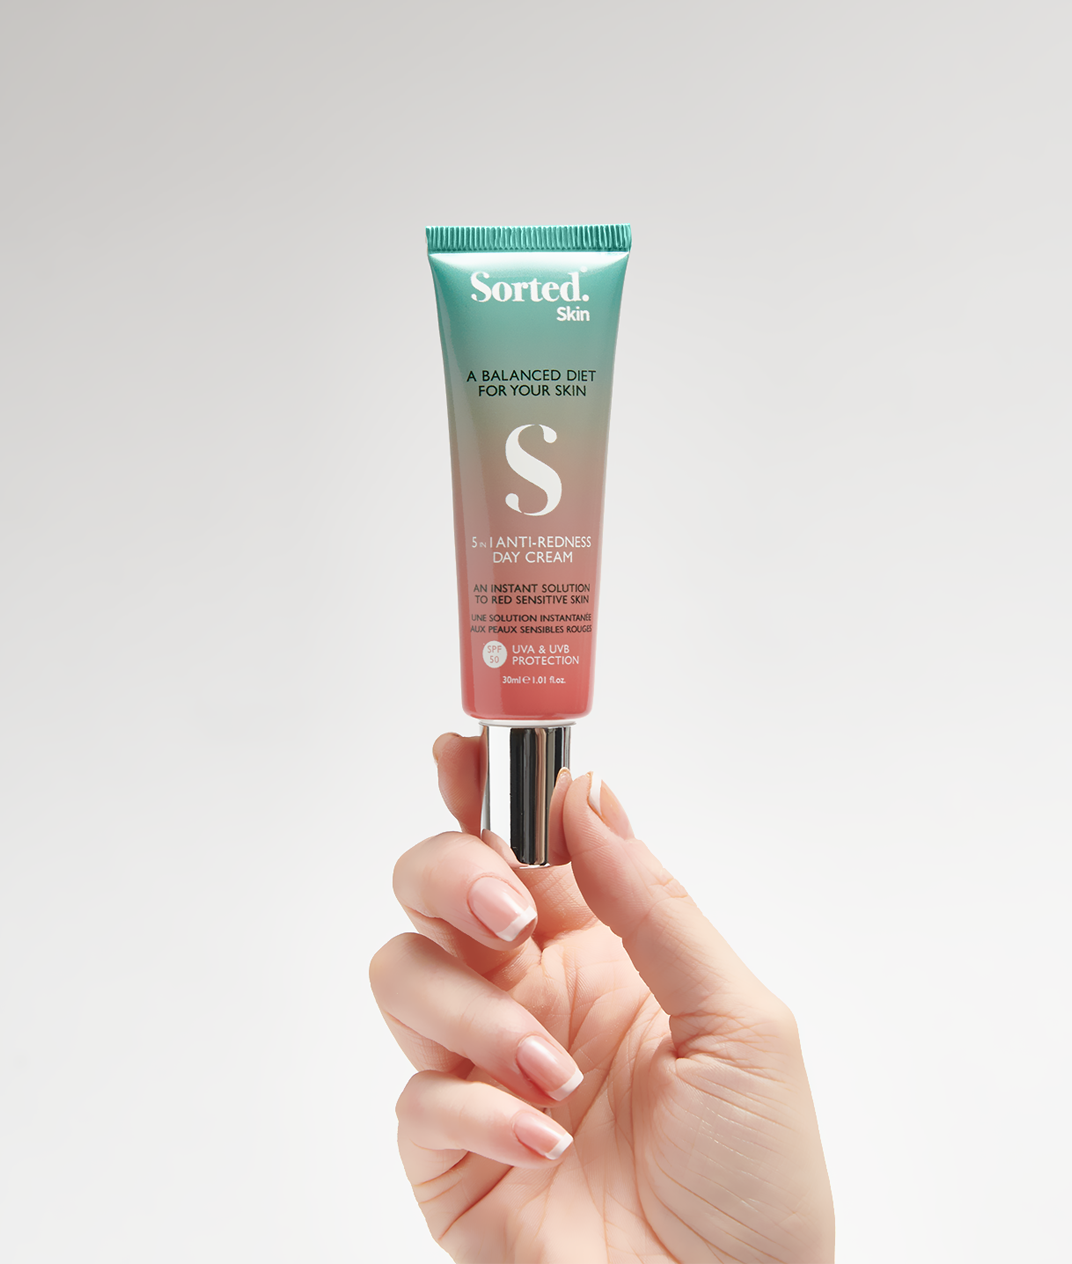 Savant forskellige Prestigefyldte 5 in 1 Anti-Redness Day Cream SPF50 – Sorted Skin